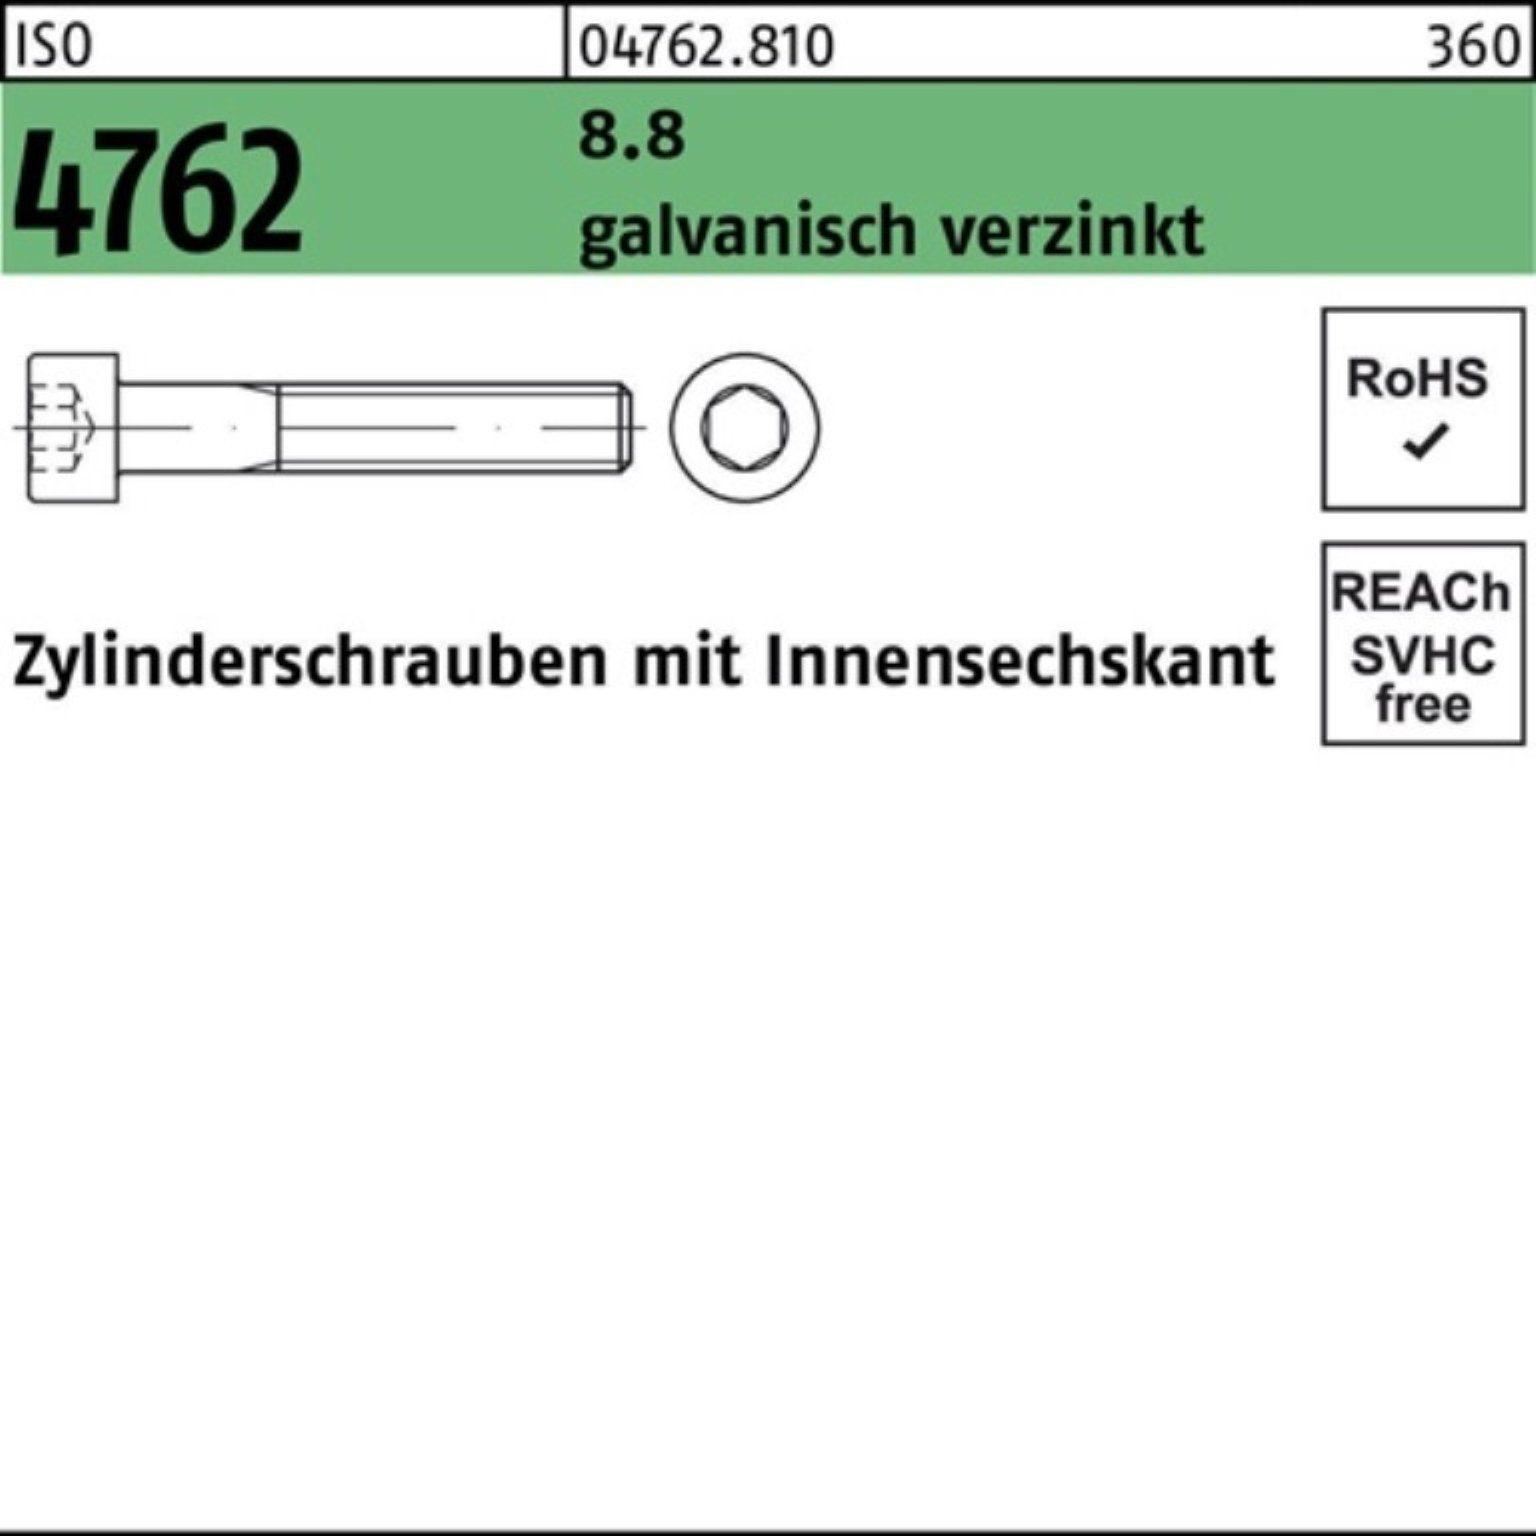 5 Zylinderschraube 8.8 galv.verz. 4762 M14x55 Zylinderschraube Pack Innen-6kt Reyher ISO 100er